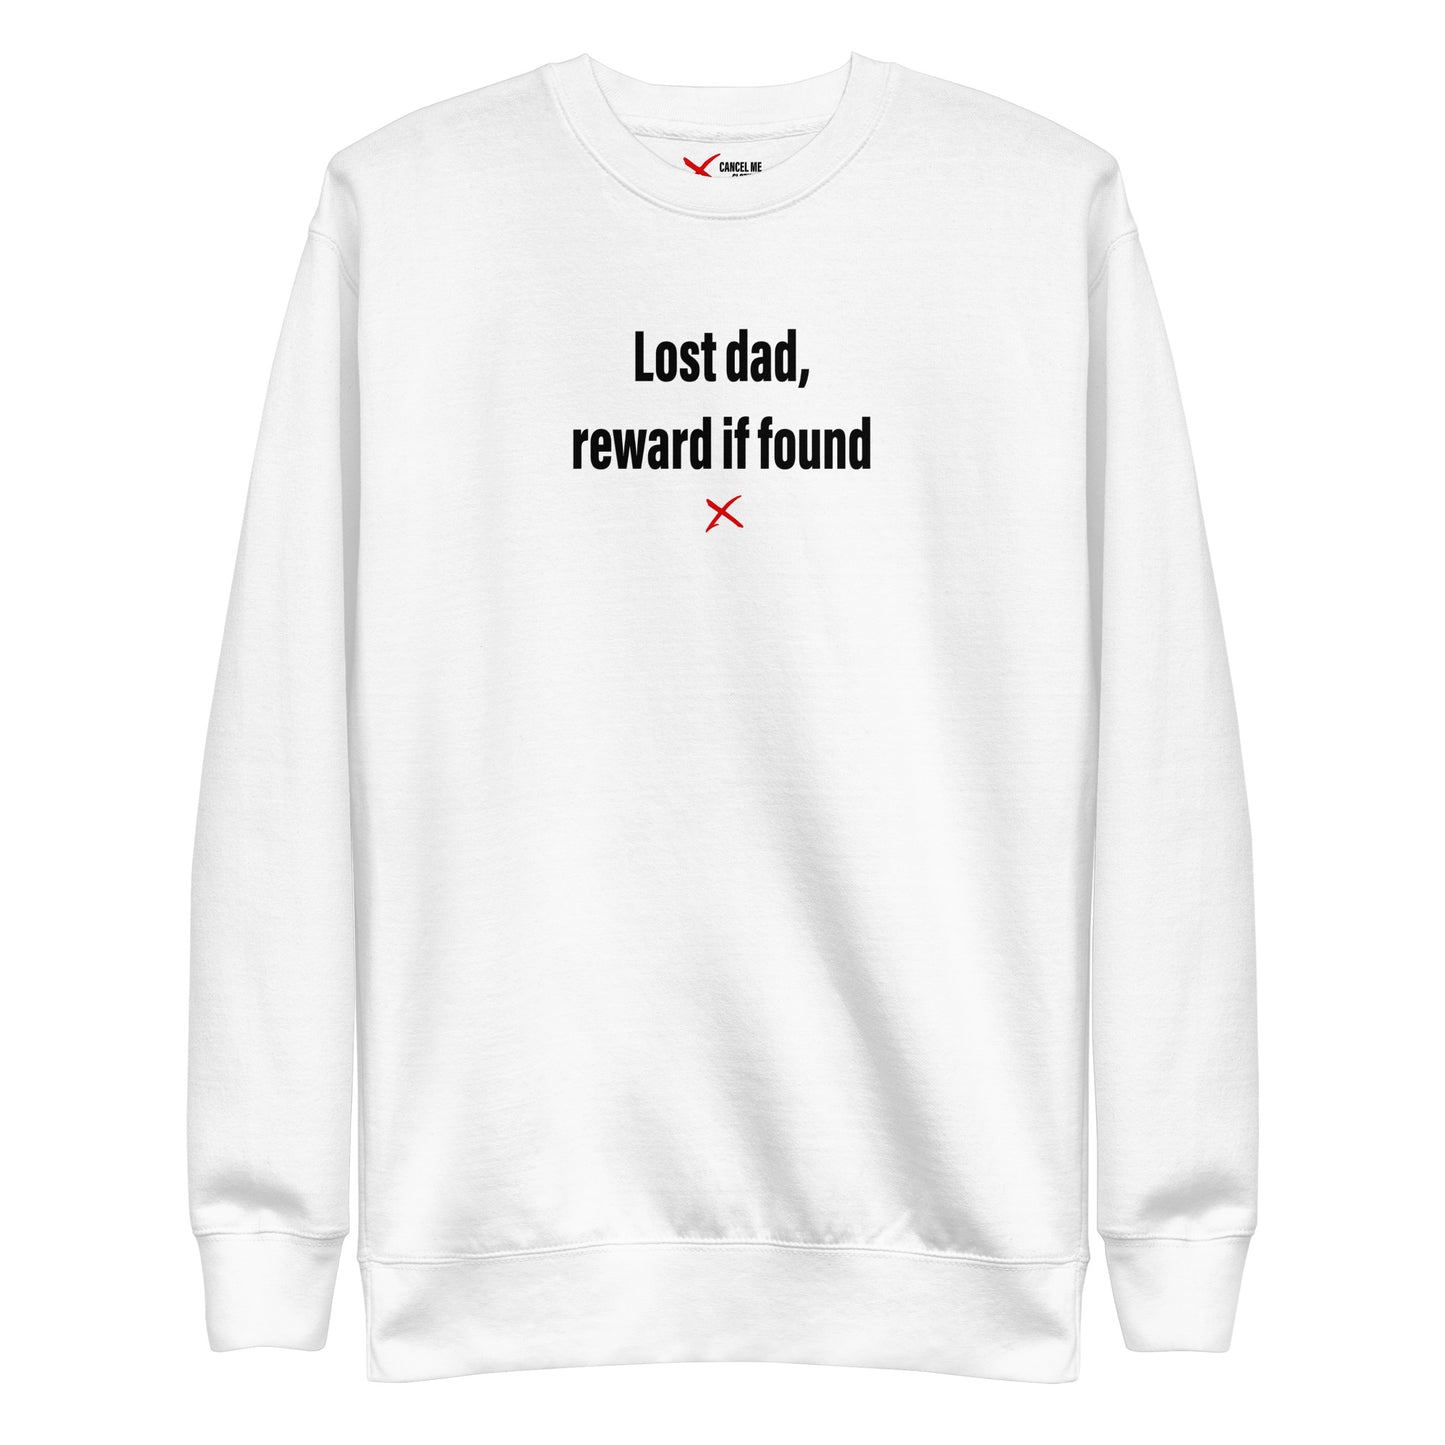 Lost dad, reward if found - Sweatshirt